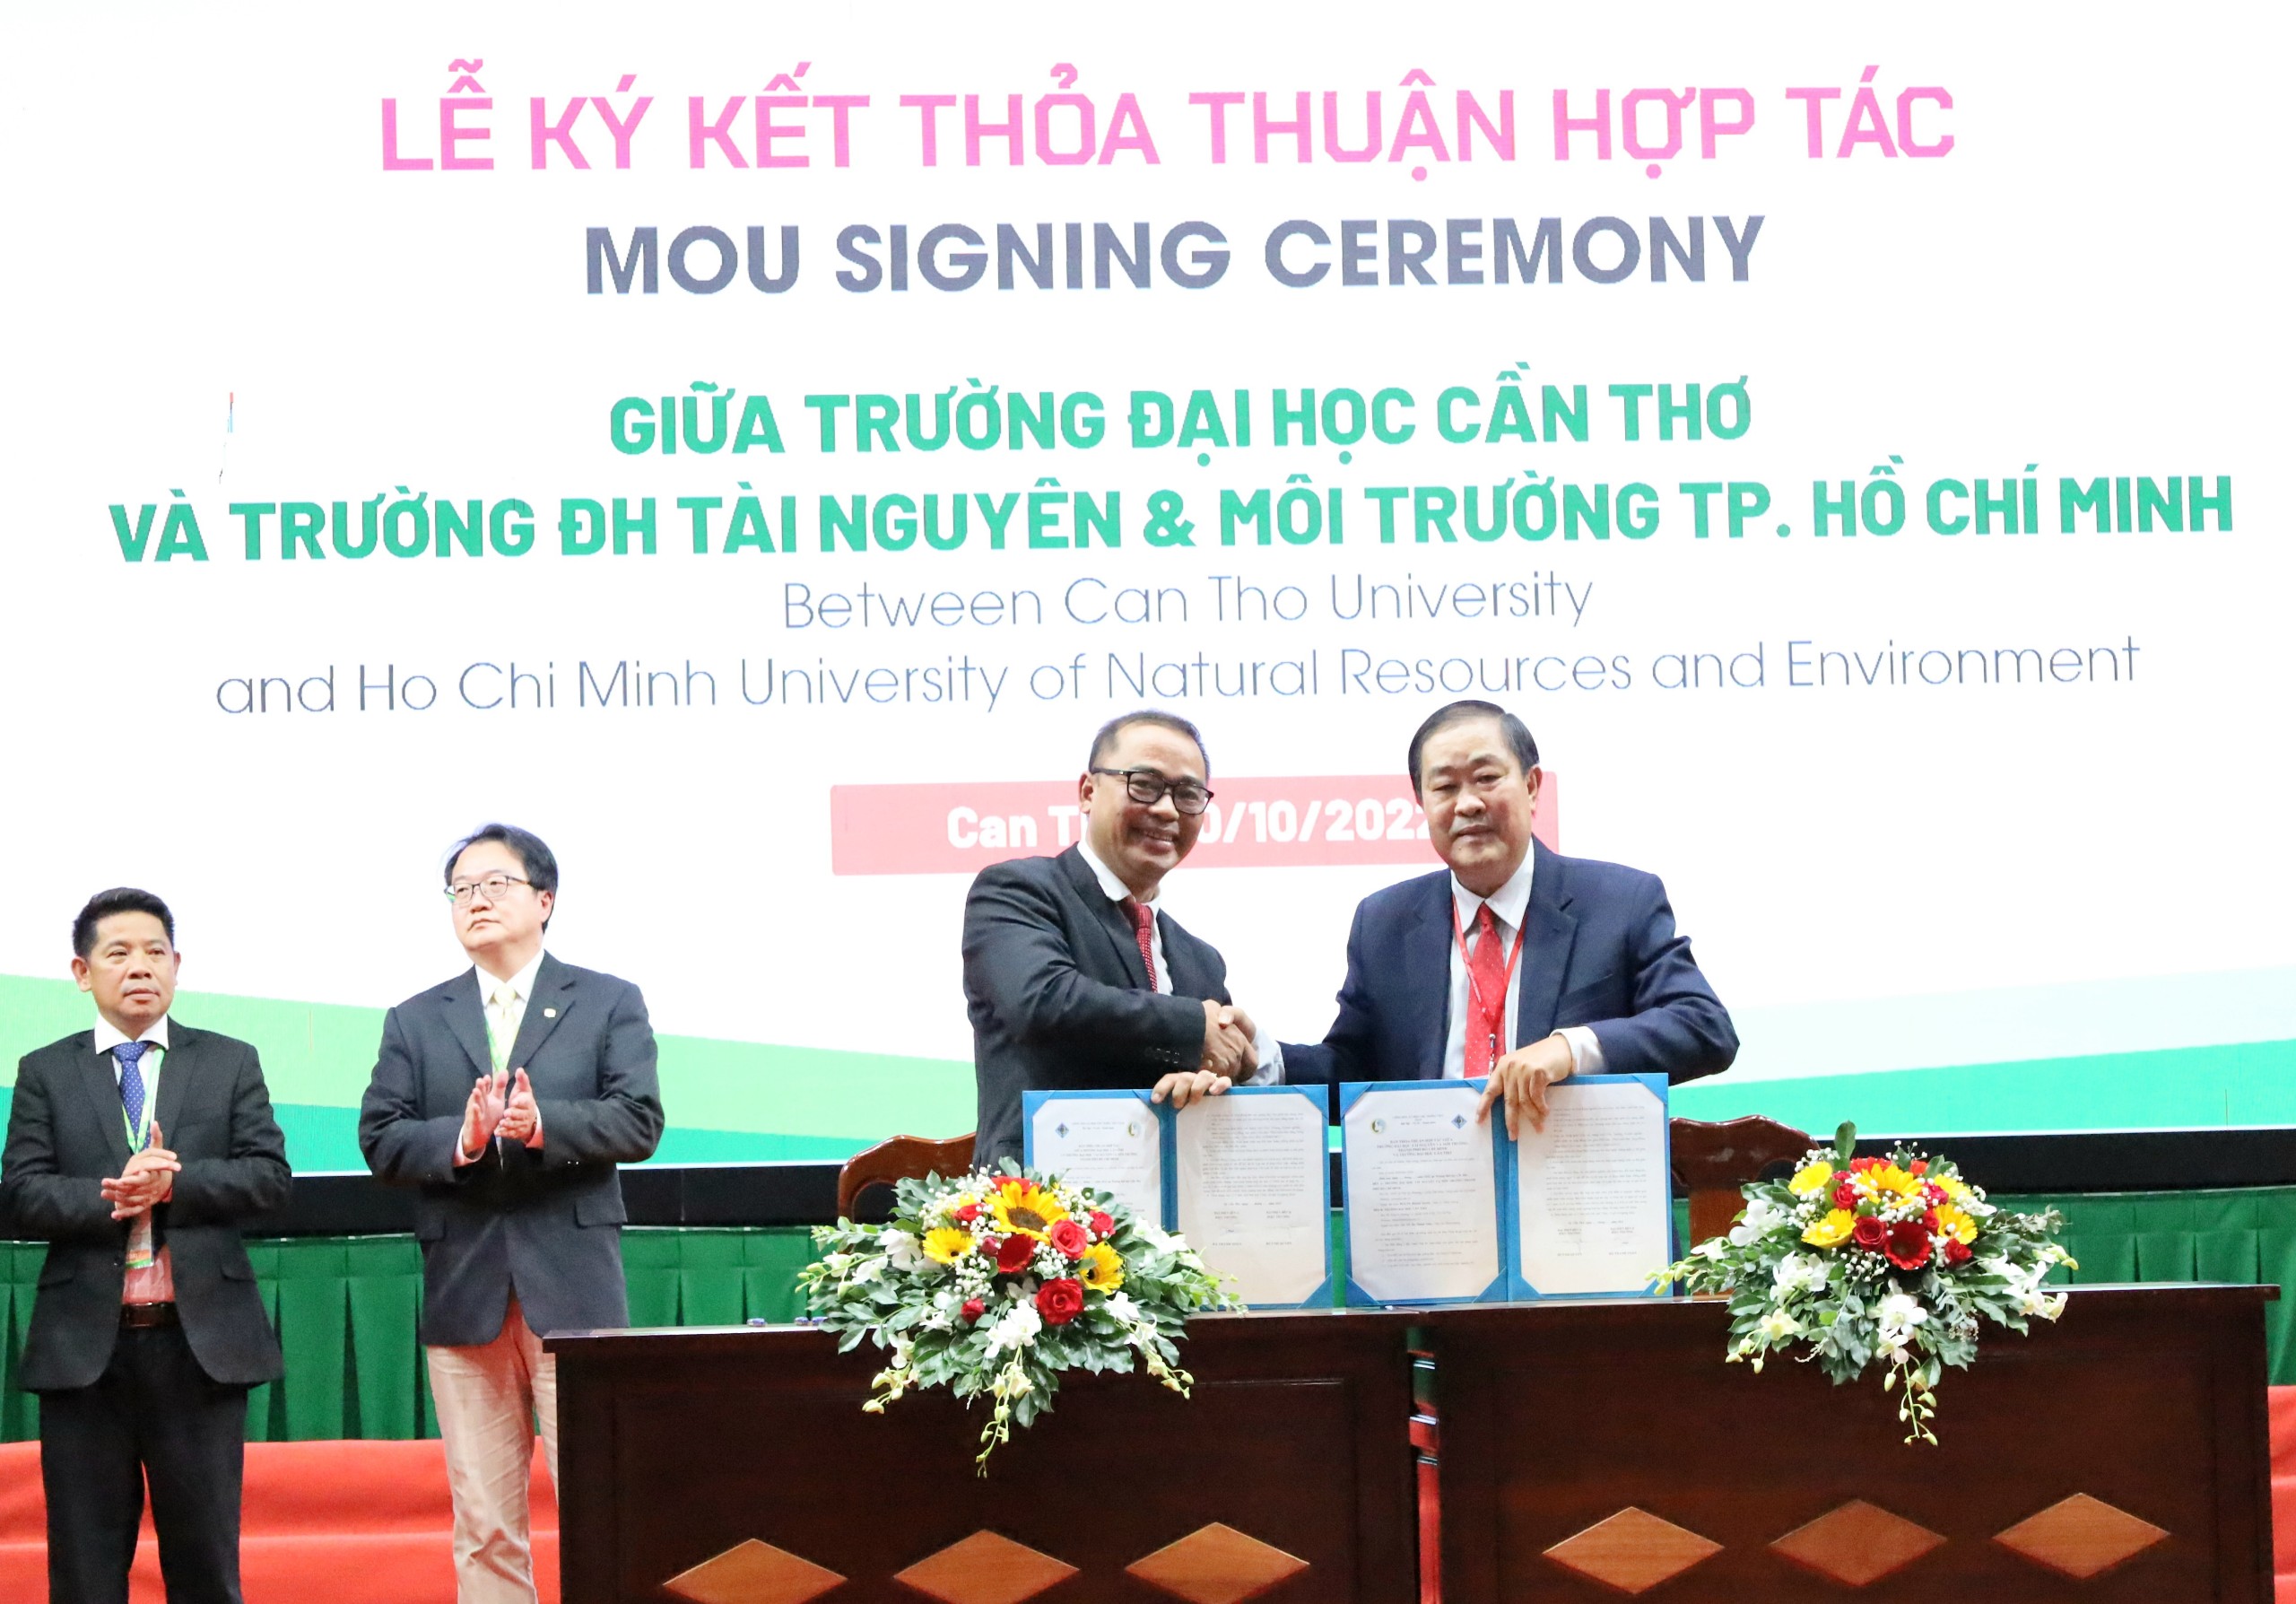 Ký kết thỏa thuận hợp tác giữa Trường Đại học Cần Thơ và Trường Đại học Tài nguyên và Môi trường TP. Hồ Chí Minh.